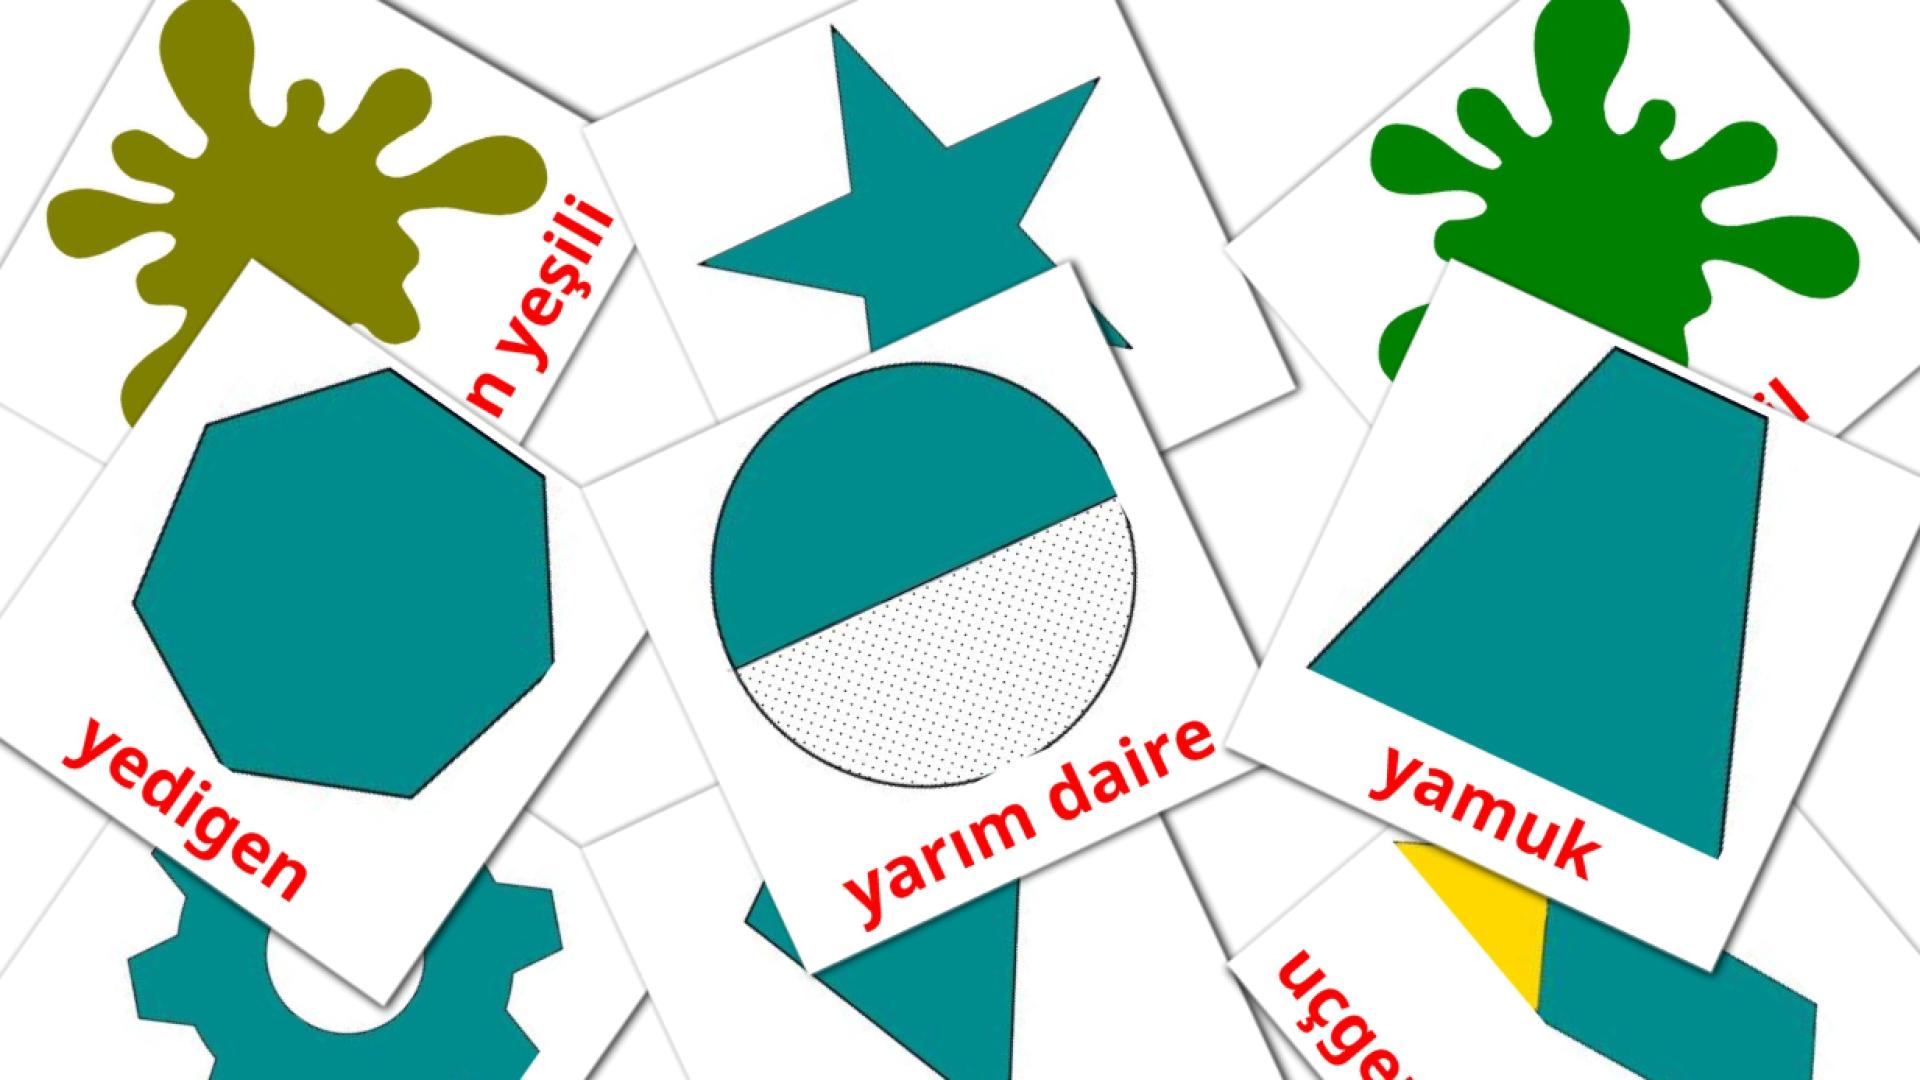 Türkisch Renkler ve Şekillere Vokabelkarteikarten